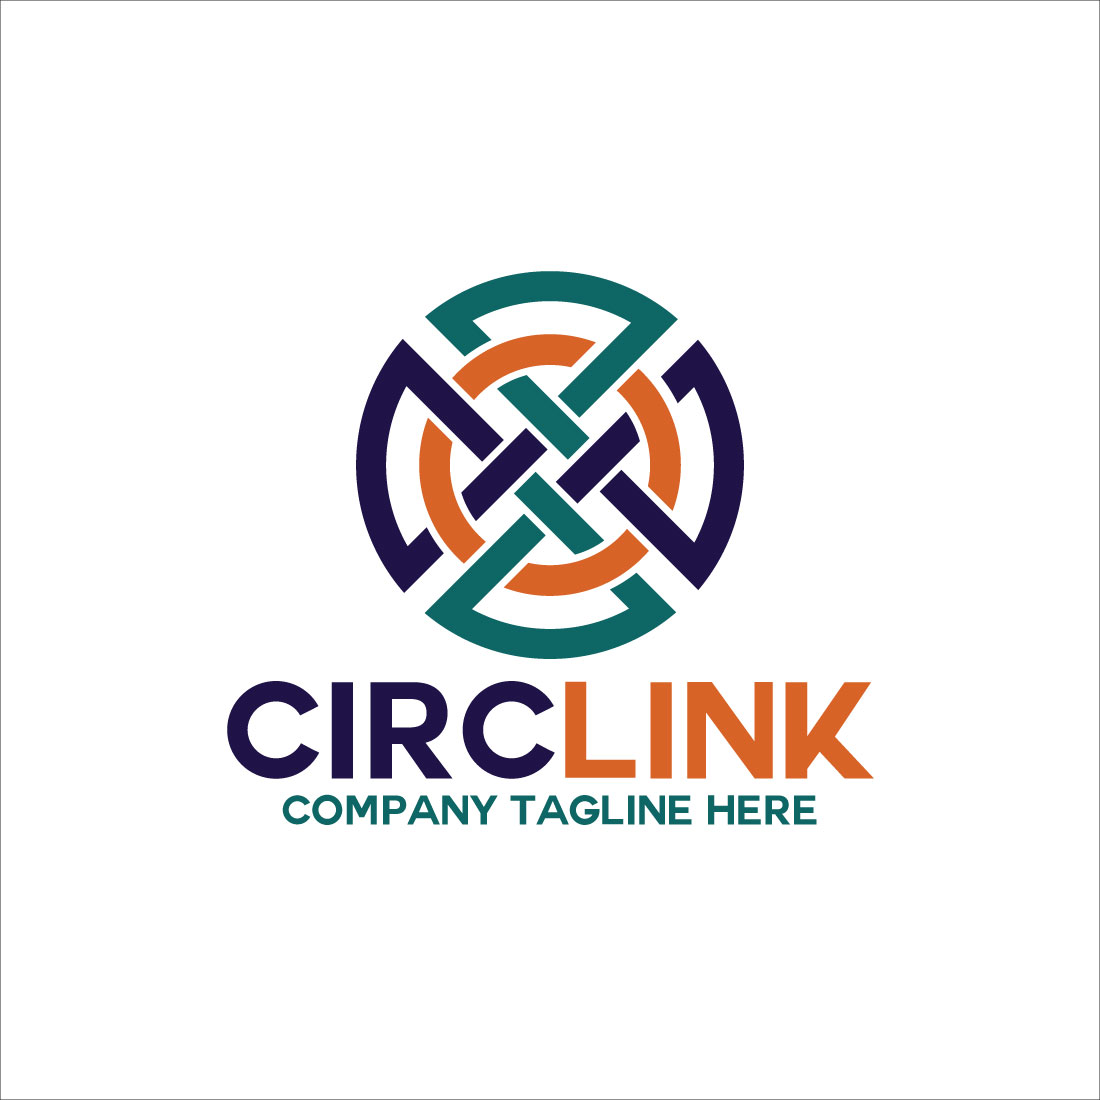 Circlink - Circle Link Logo preview image.